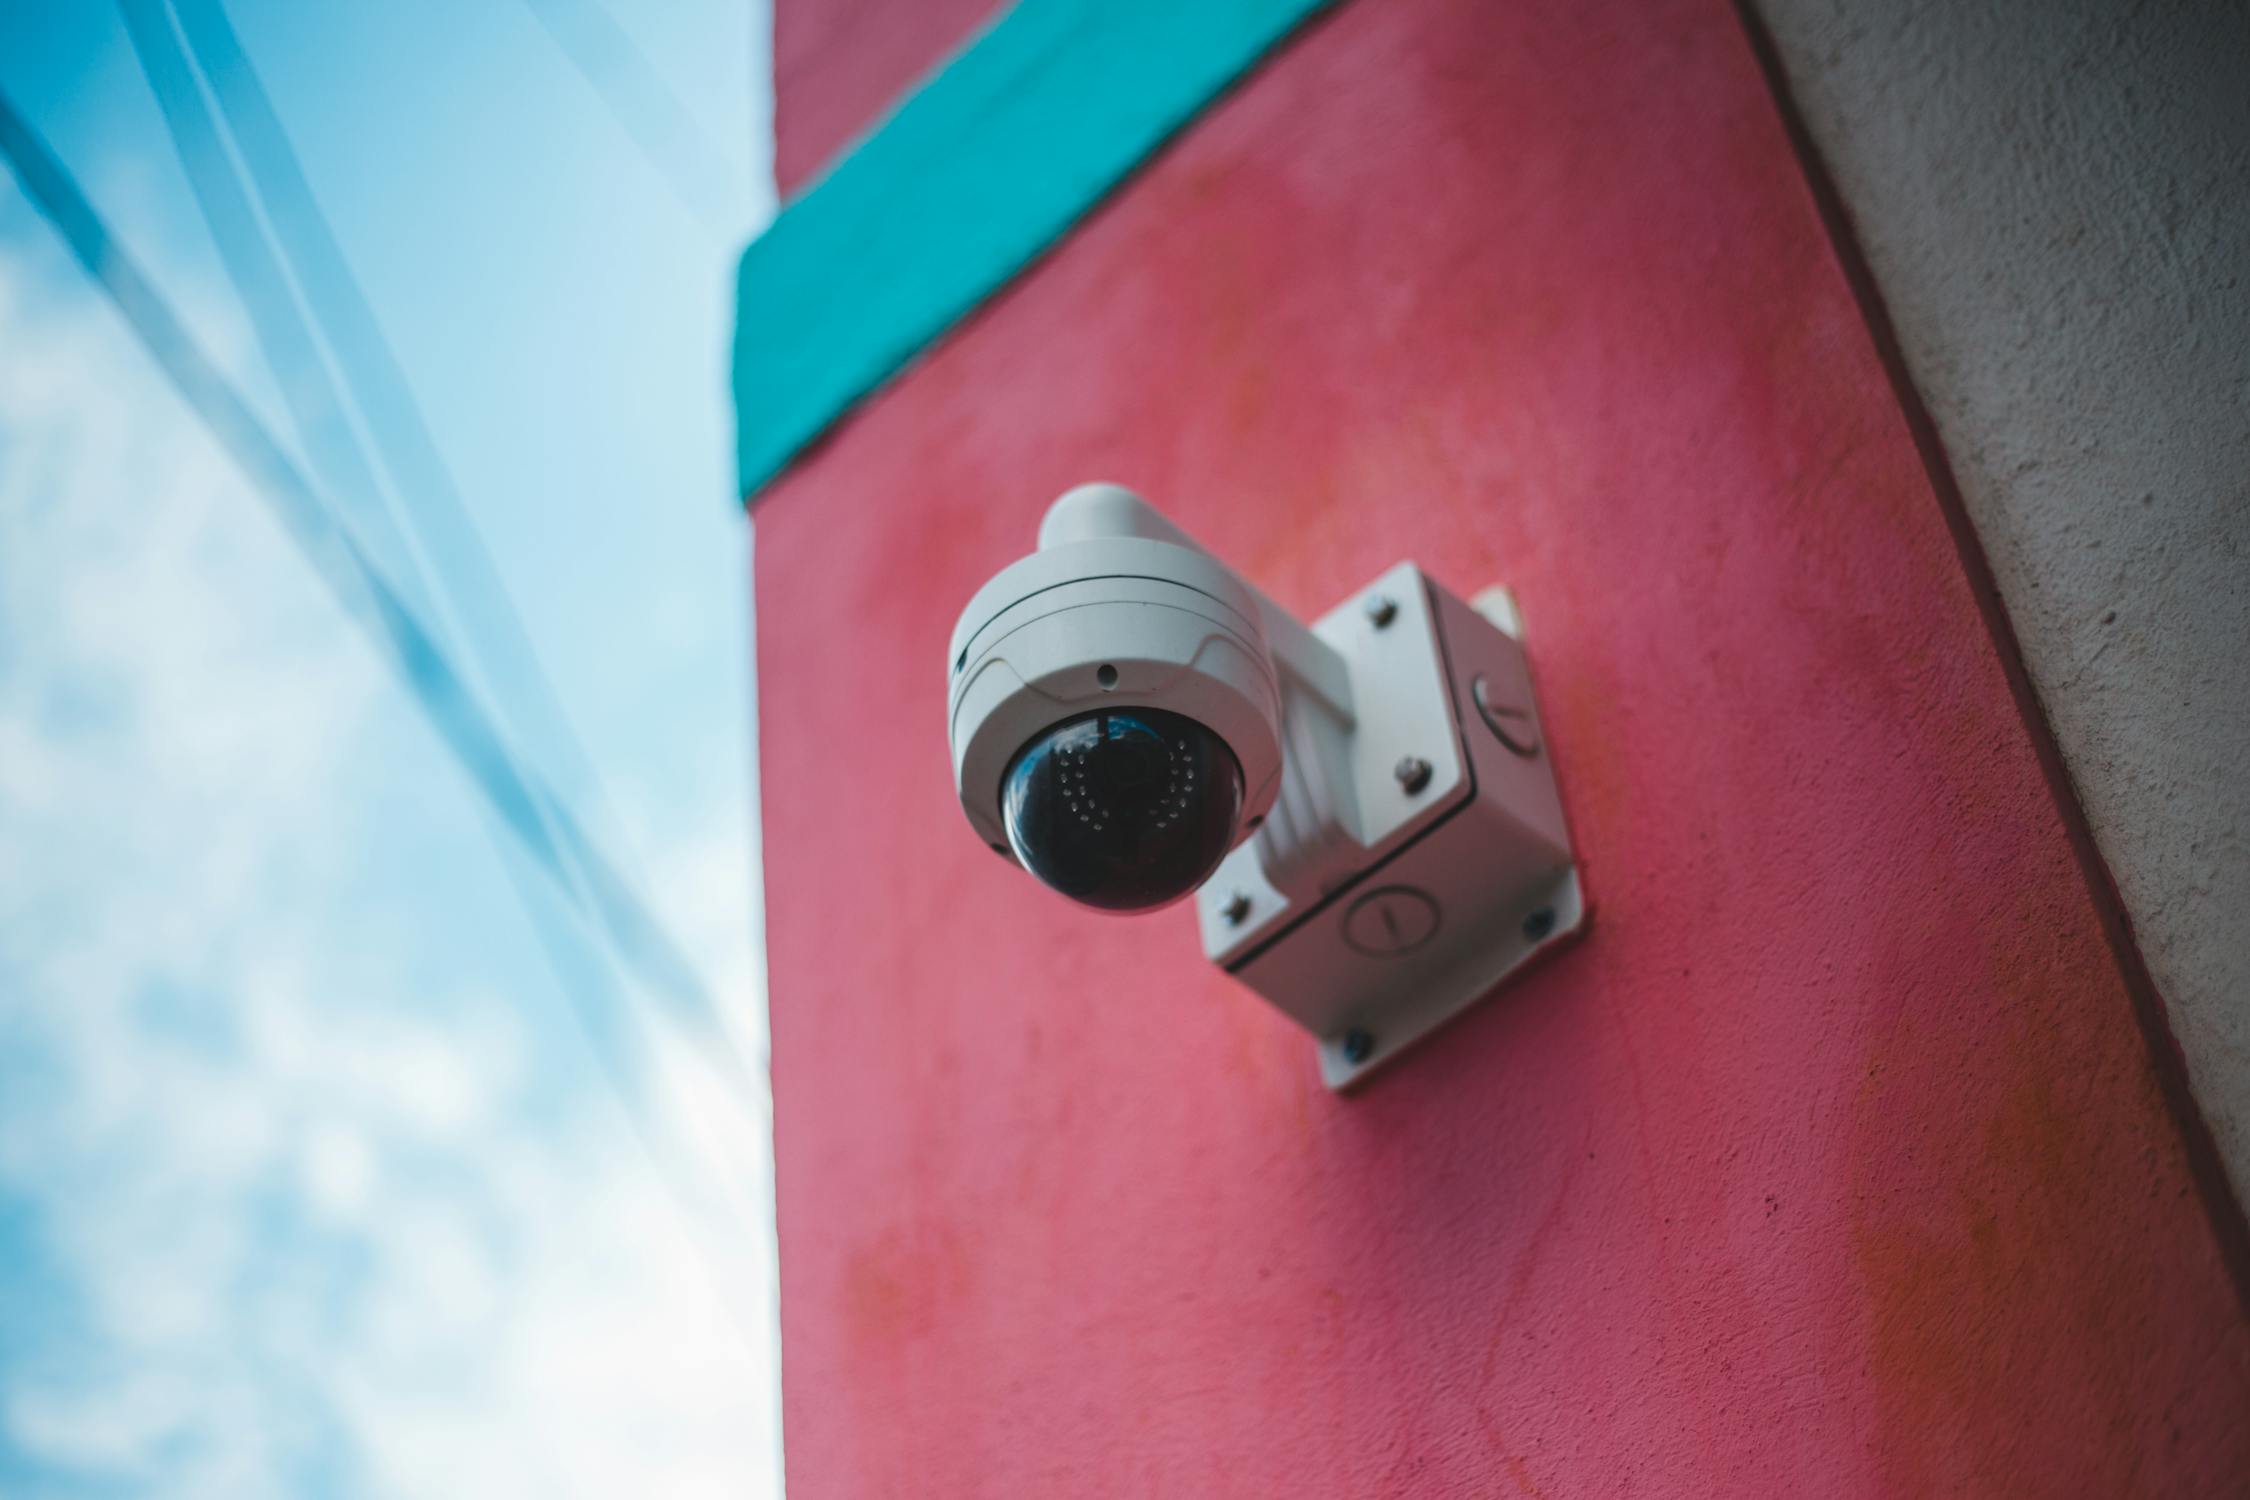 CCTV Photo by Erik Mclean from Pexels